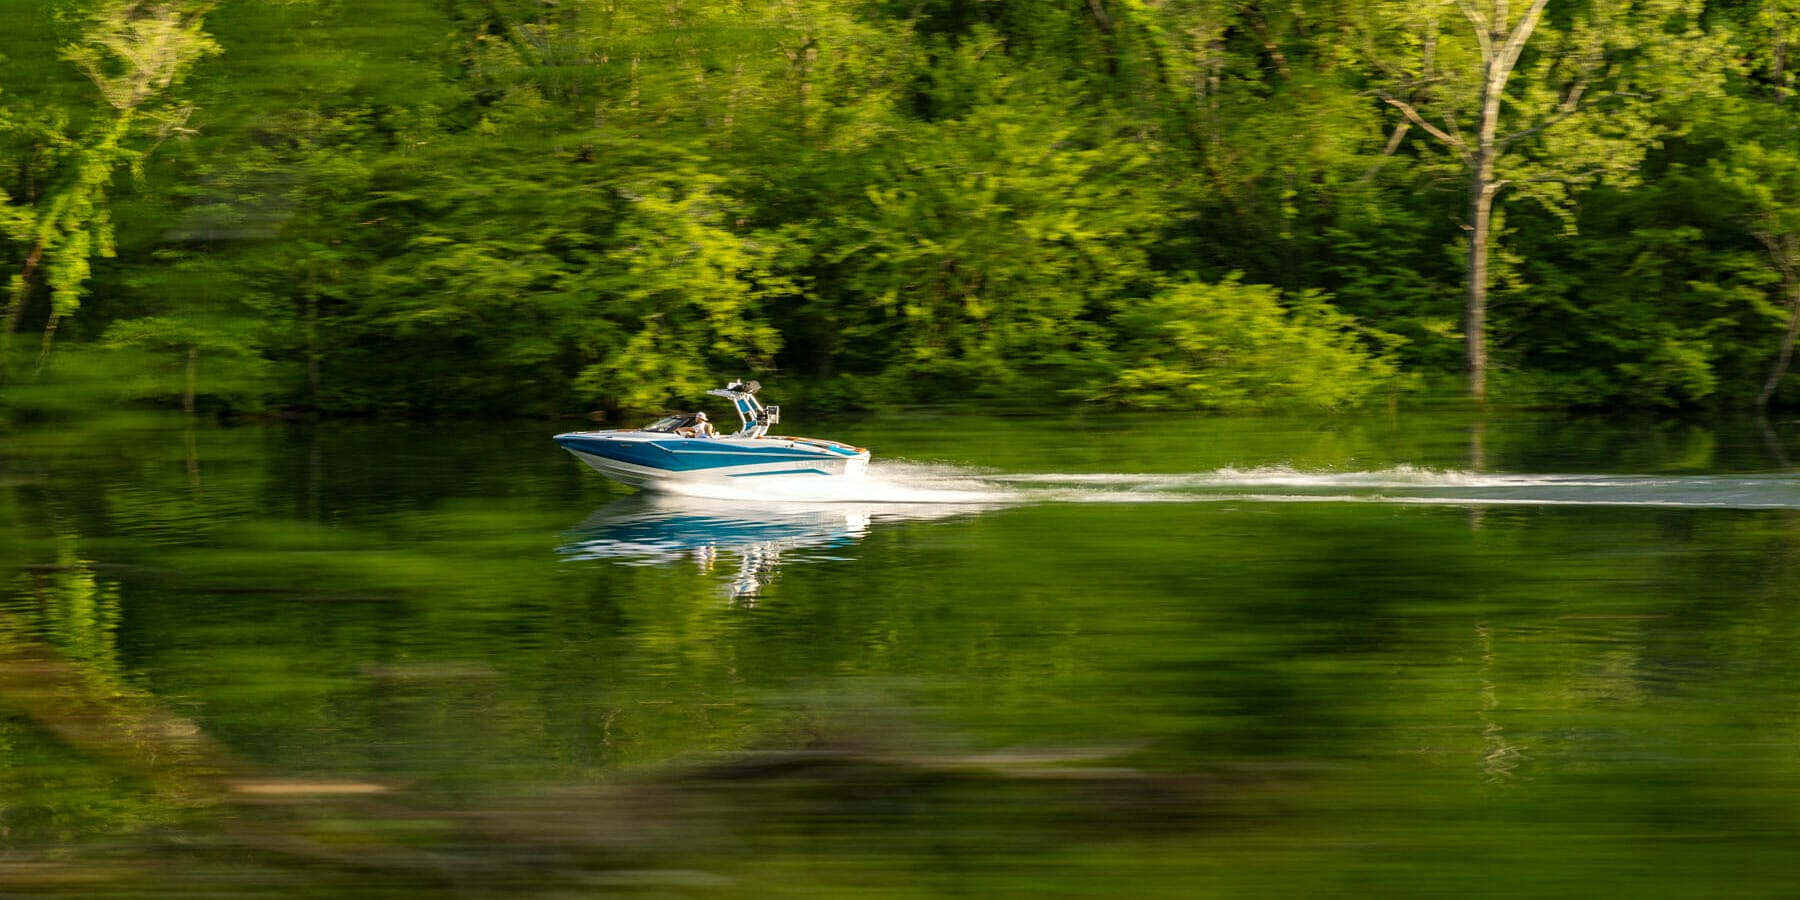 ZS232 racing through lake